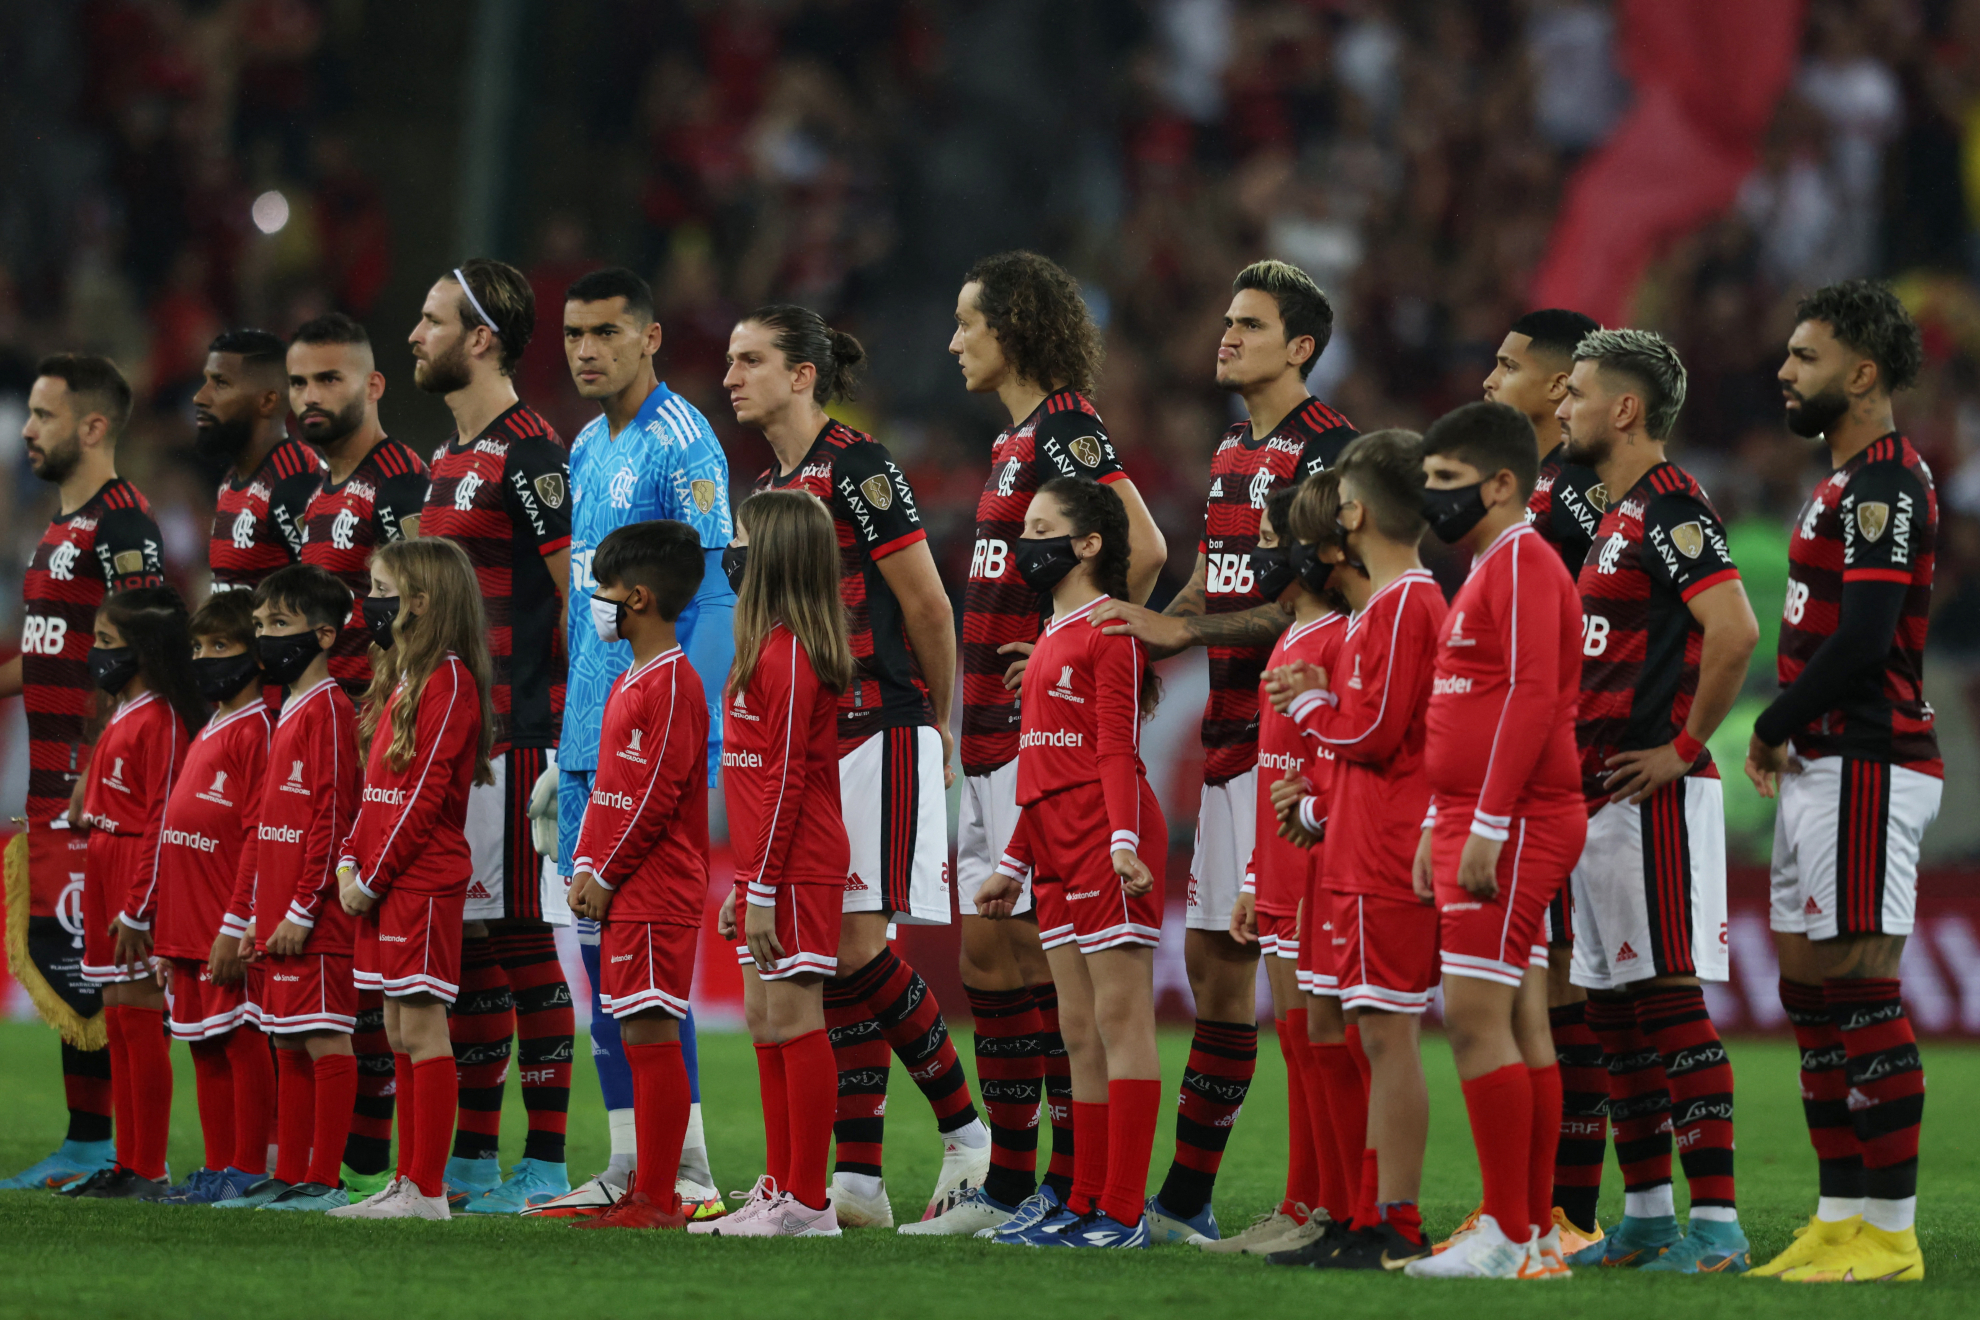 Niño presume su playera del Flamengo en pleno protocolo junto a los jugadores del Corinthians